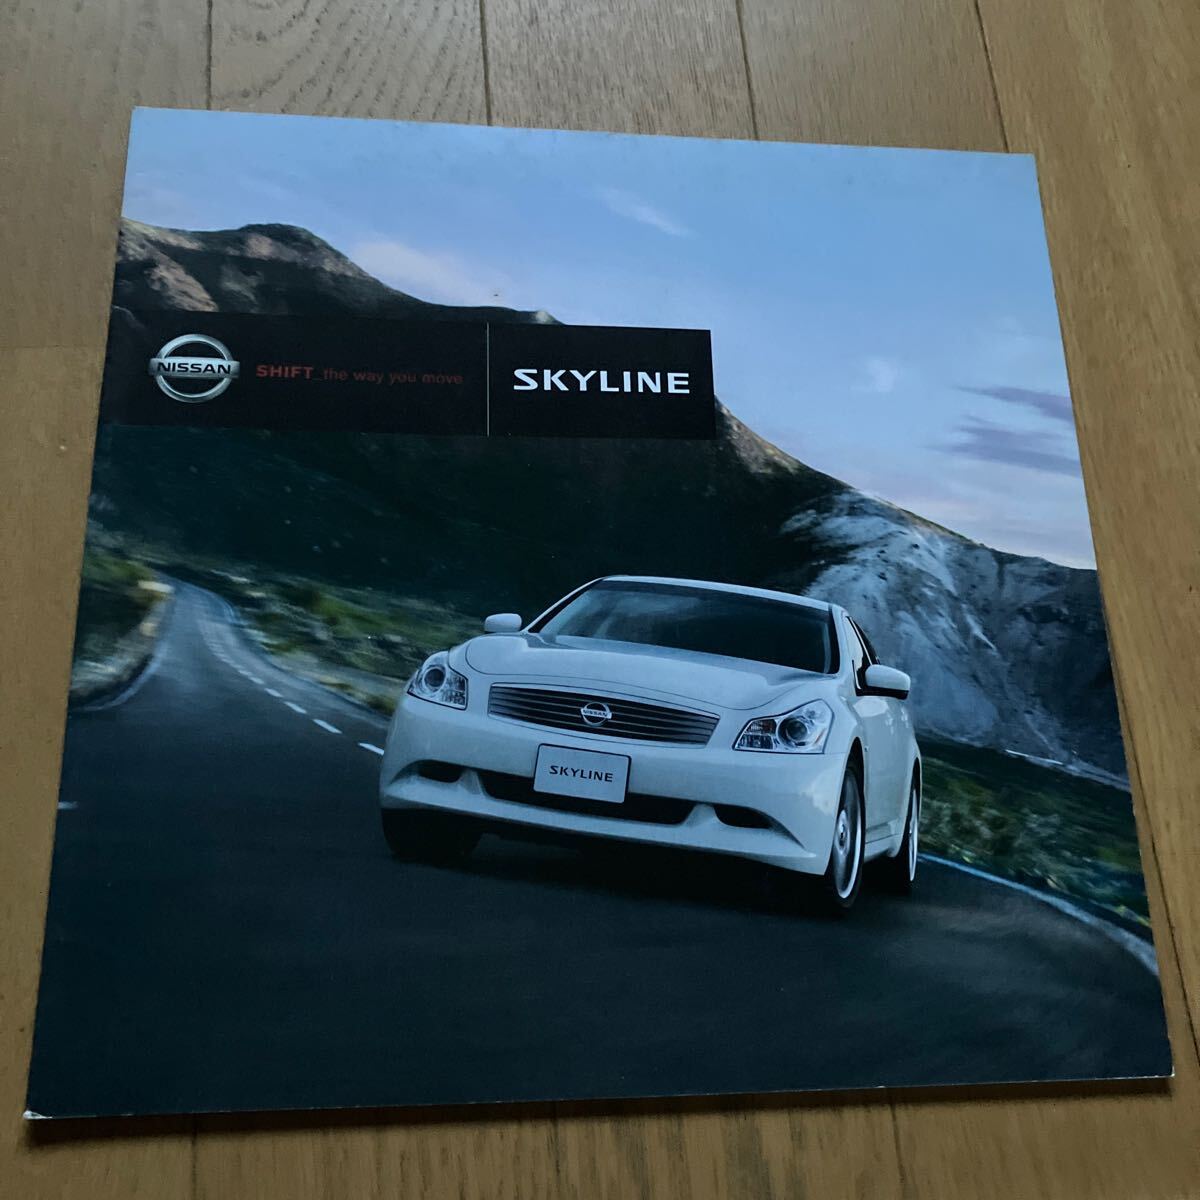  Nissan Skyline кроссовер Skyline купе каталог комплект дополнительный каталог запчастей имеется 2006 год 2009 год 2007 год подлинная вещь 